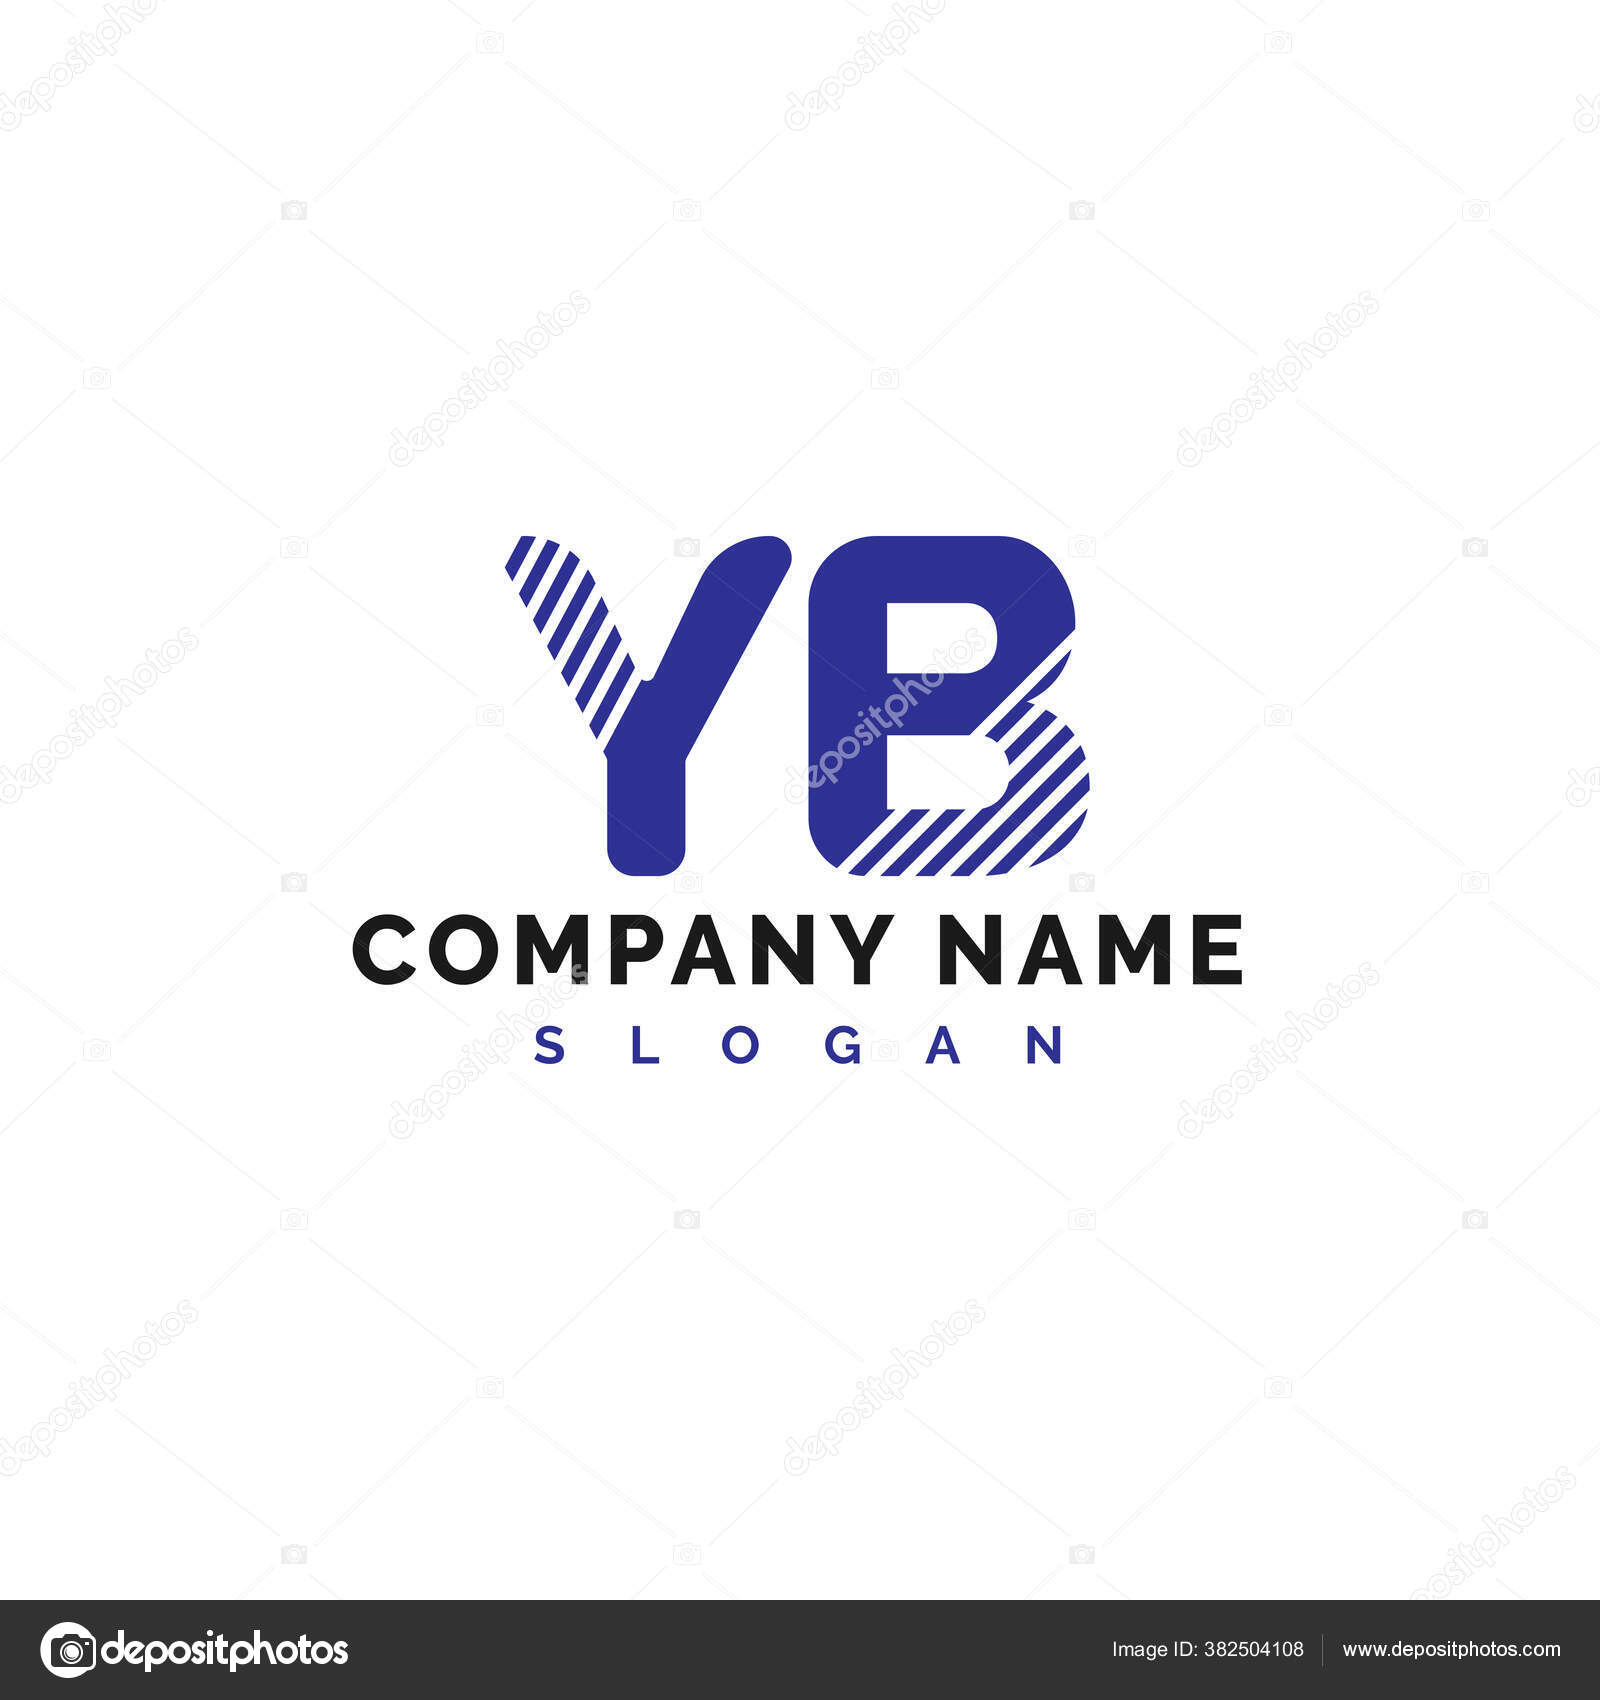 Yb Logo Images Vectorielles Yb Logo Vecteurs Libres De Droits Depositphotos